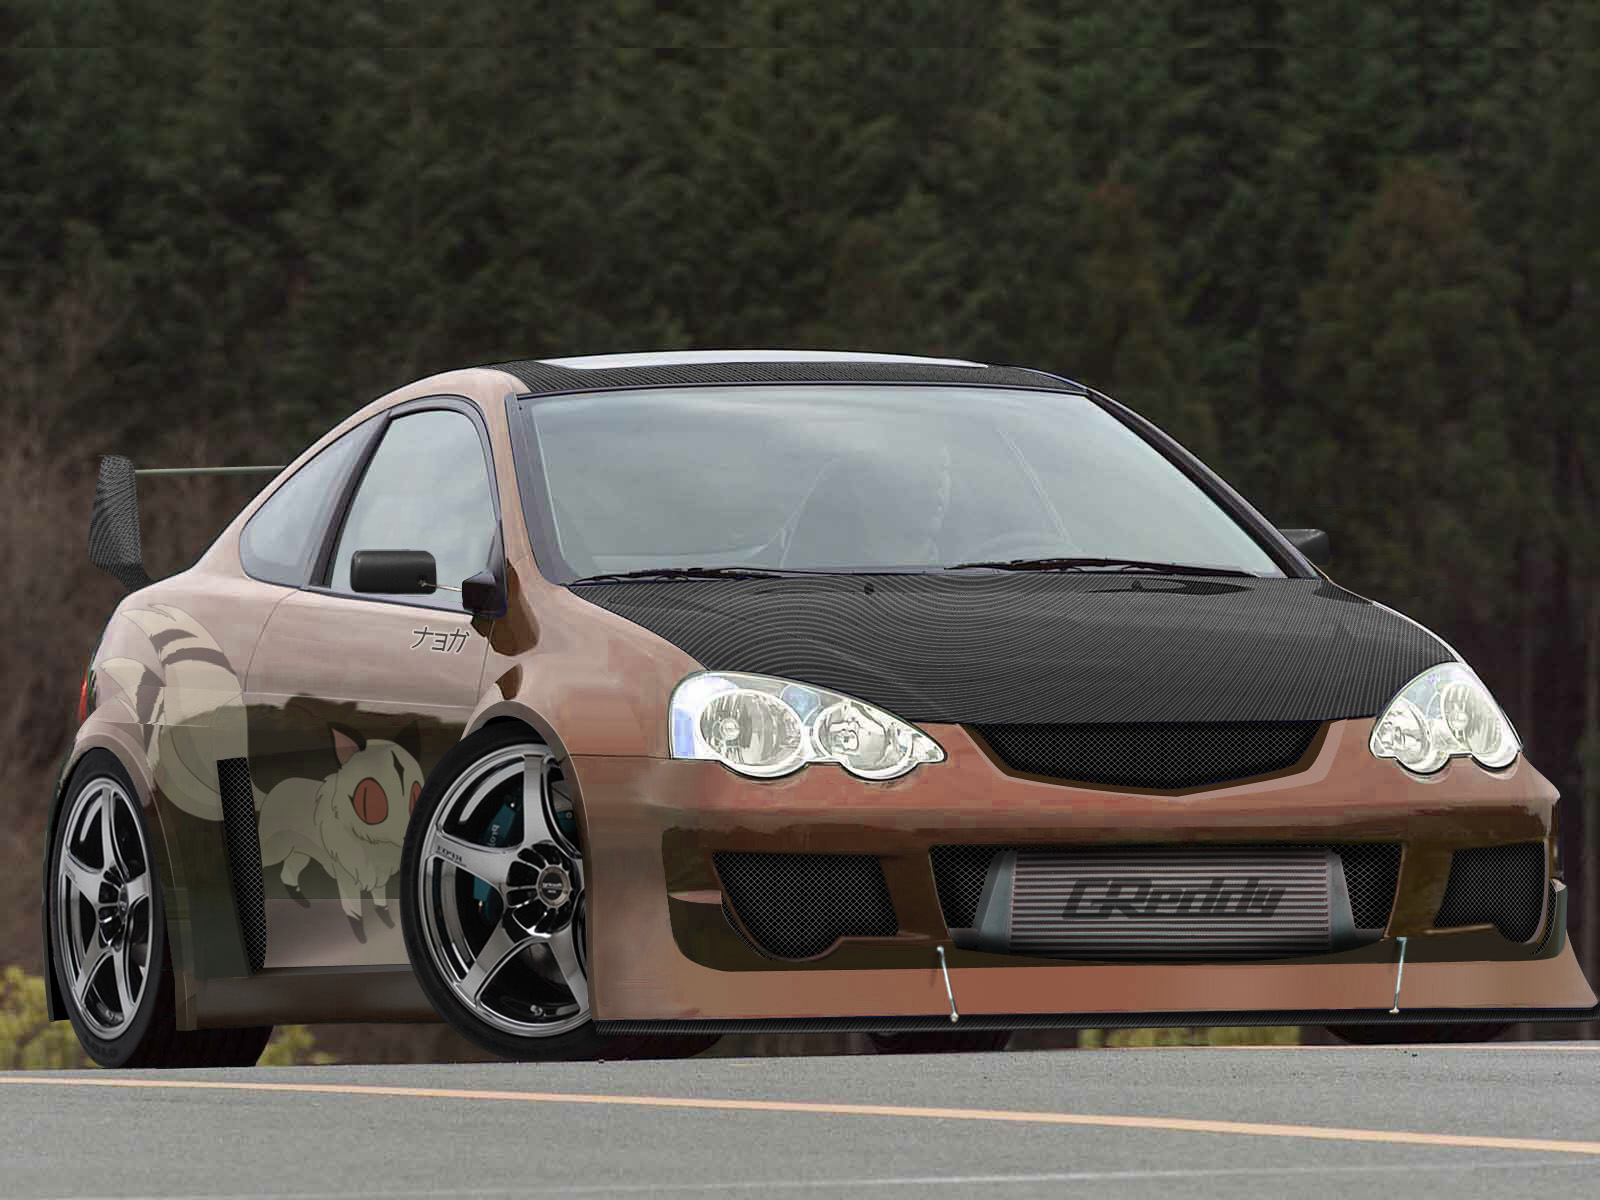 Bronze Acura RSX Turbo’d!